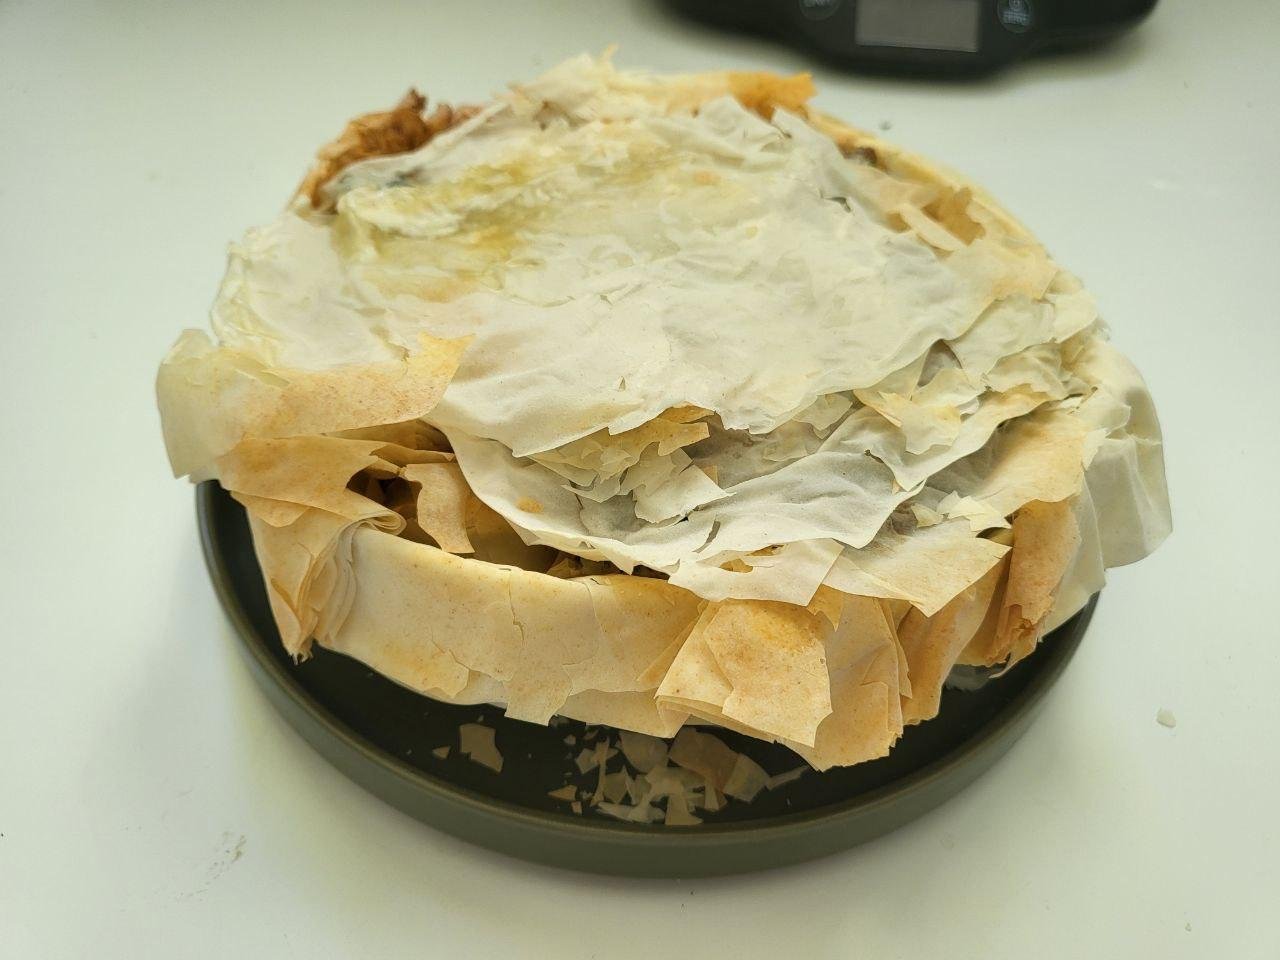 Пирог вынутый из формы и немного помятый переворотами